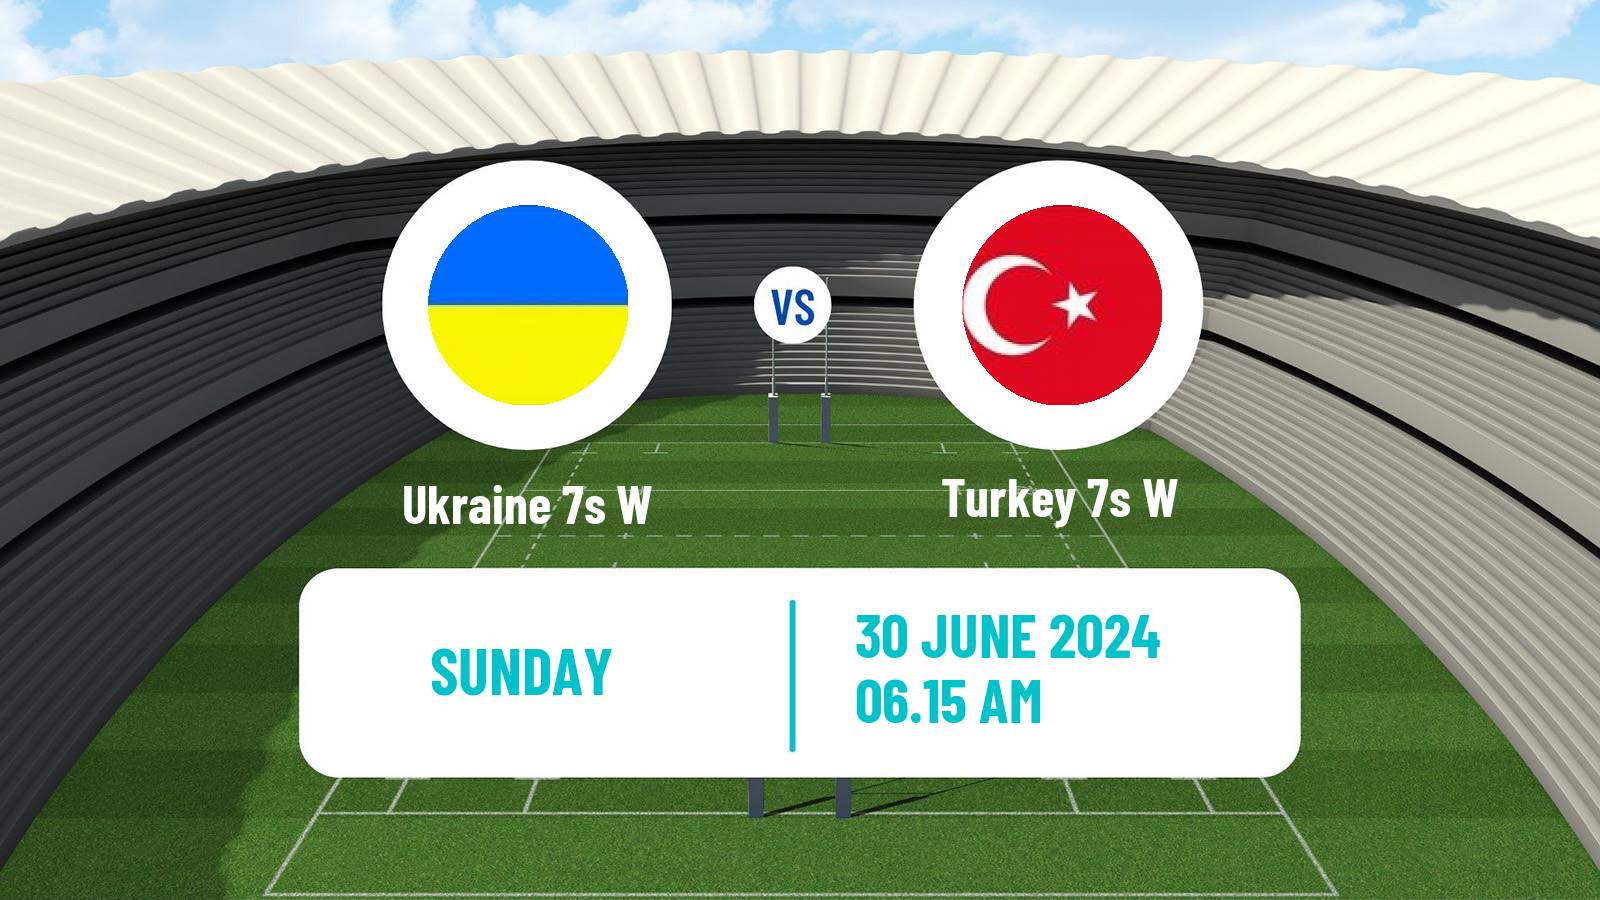 Rugby union Sevens Europe Series Women - Germany Ukraine 7s W - Turkey 7s W